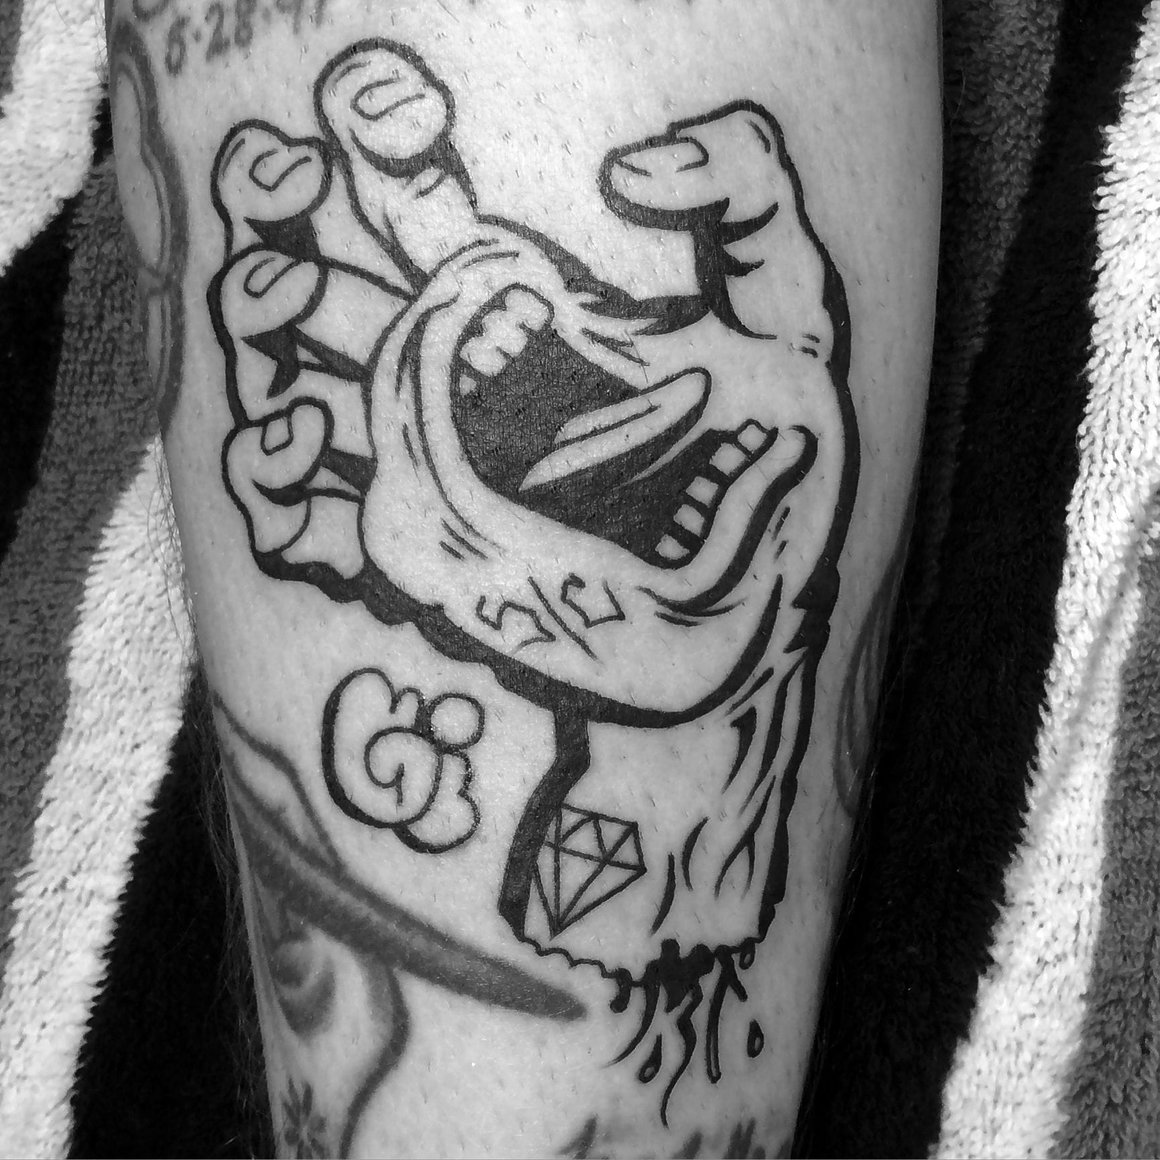 Photographie d'un tatouage de Mike Giant, une main possédant une bouche en train de crier.